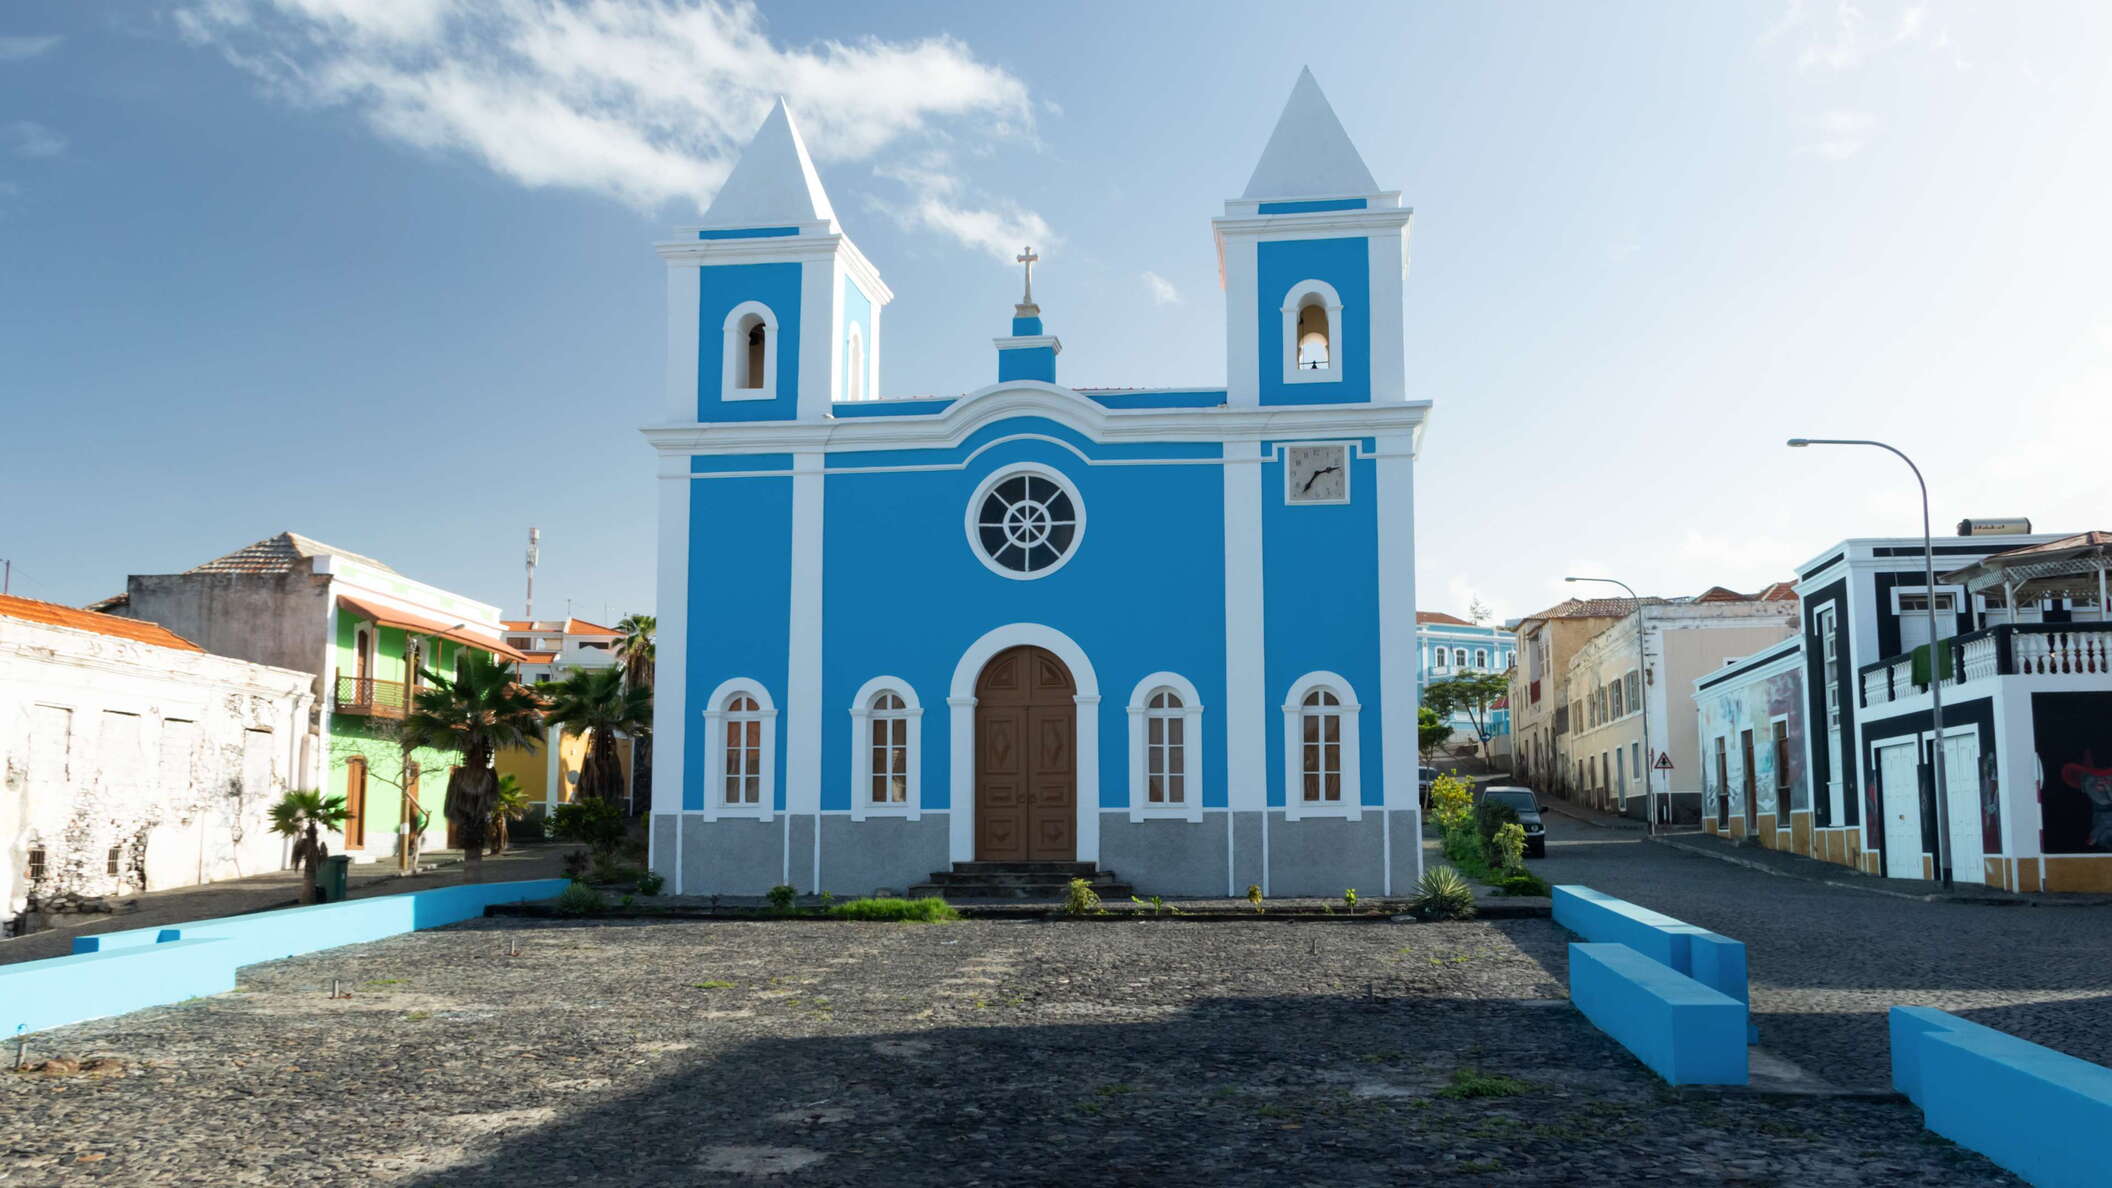 Fogo | São Filipe with Nossa Senhora da Conceição